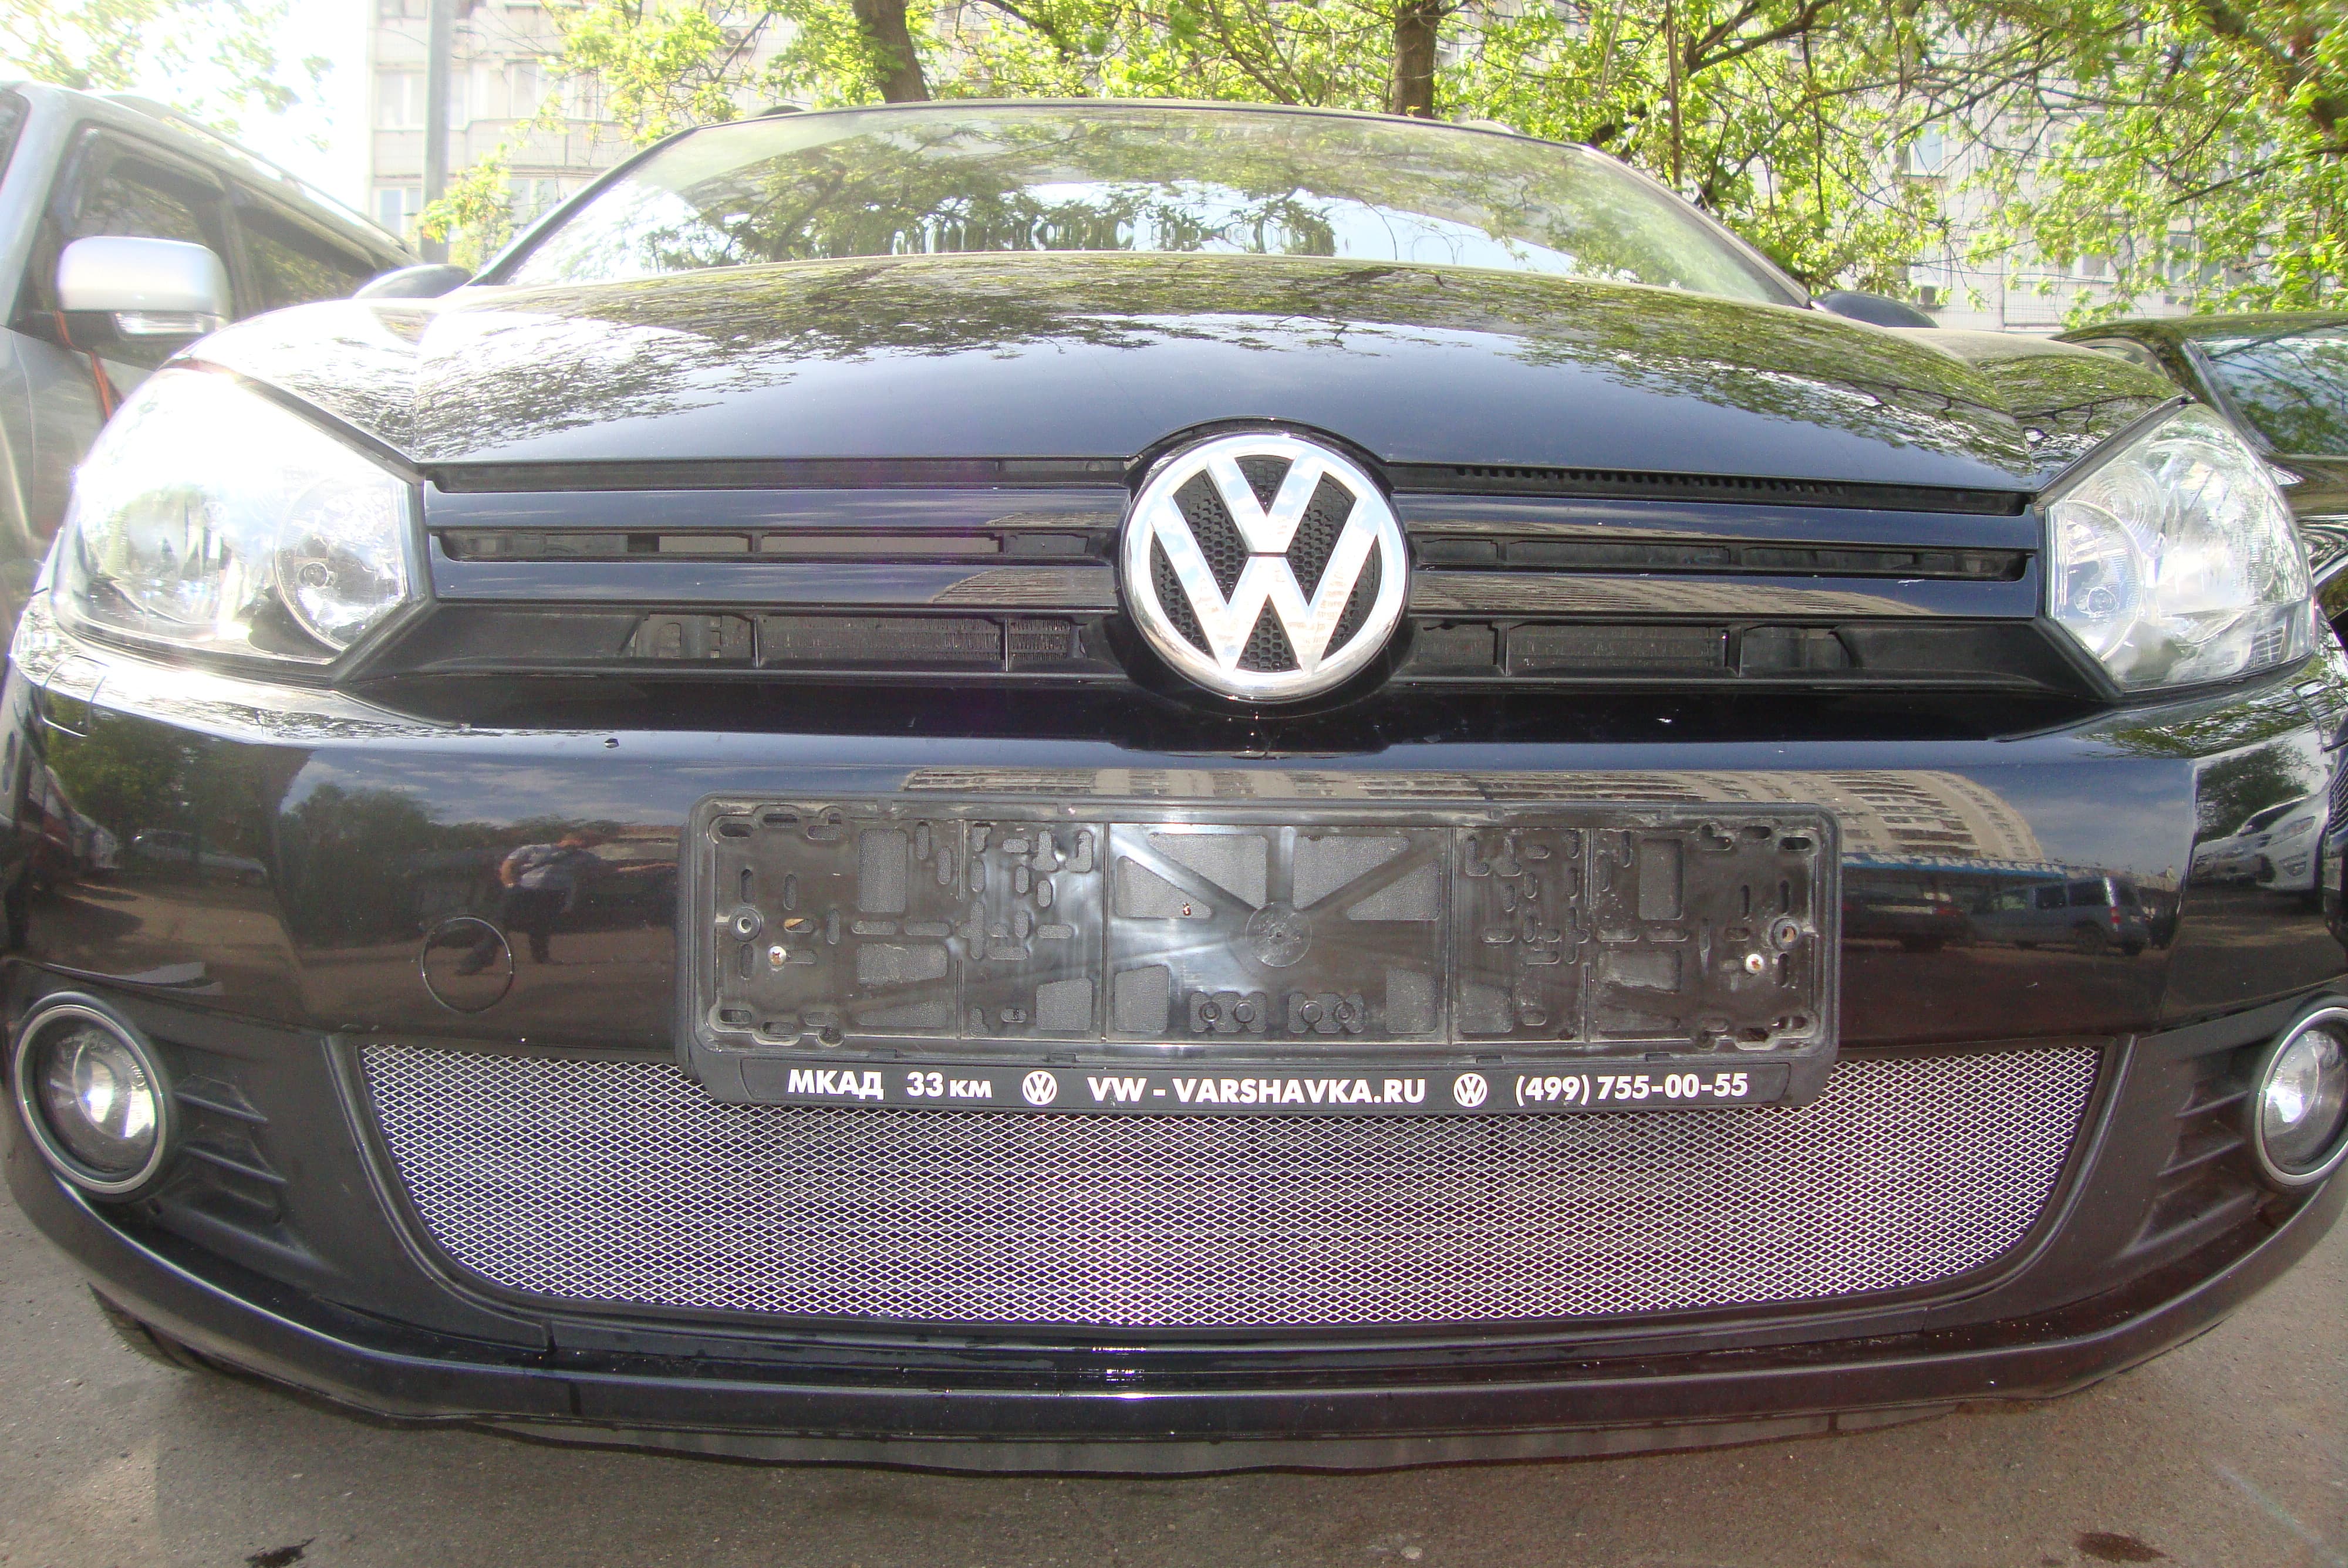 Защитная сетка радиатора ProtectGrille для Volkswagen Golf VI (2008-2012 Хром)